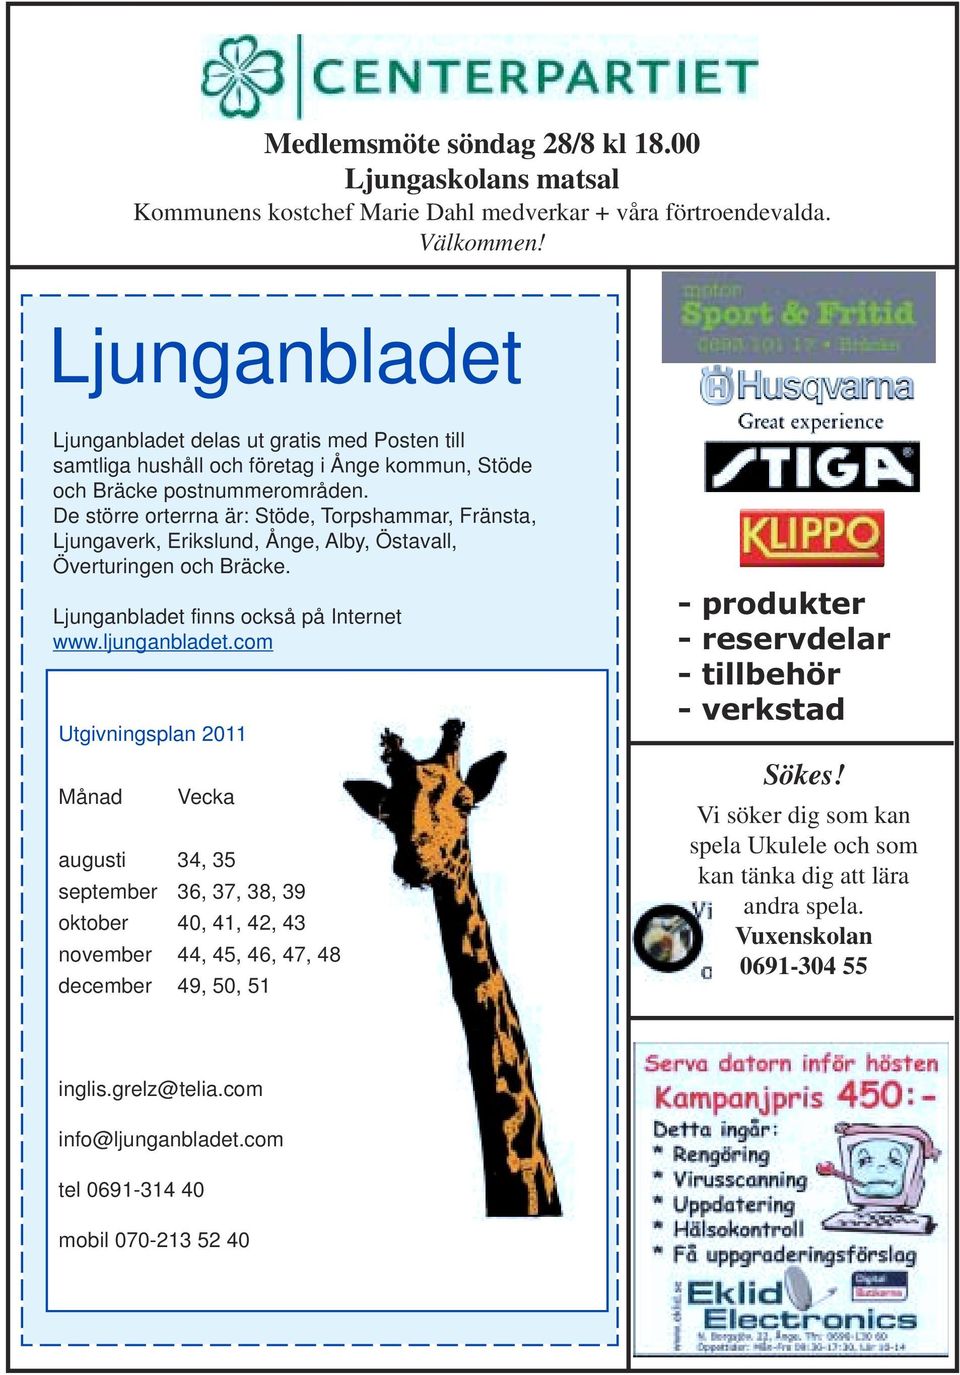 De större orterrna är: Stöde, Torpshammar, Fränsta, Ljungaverk, Erikslund, Ånge, Alby, Östavall, Överturingen och Bräcke. Ljunganbladet finns också på Internet www.ljunganbladet.